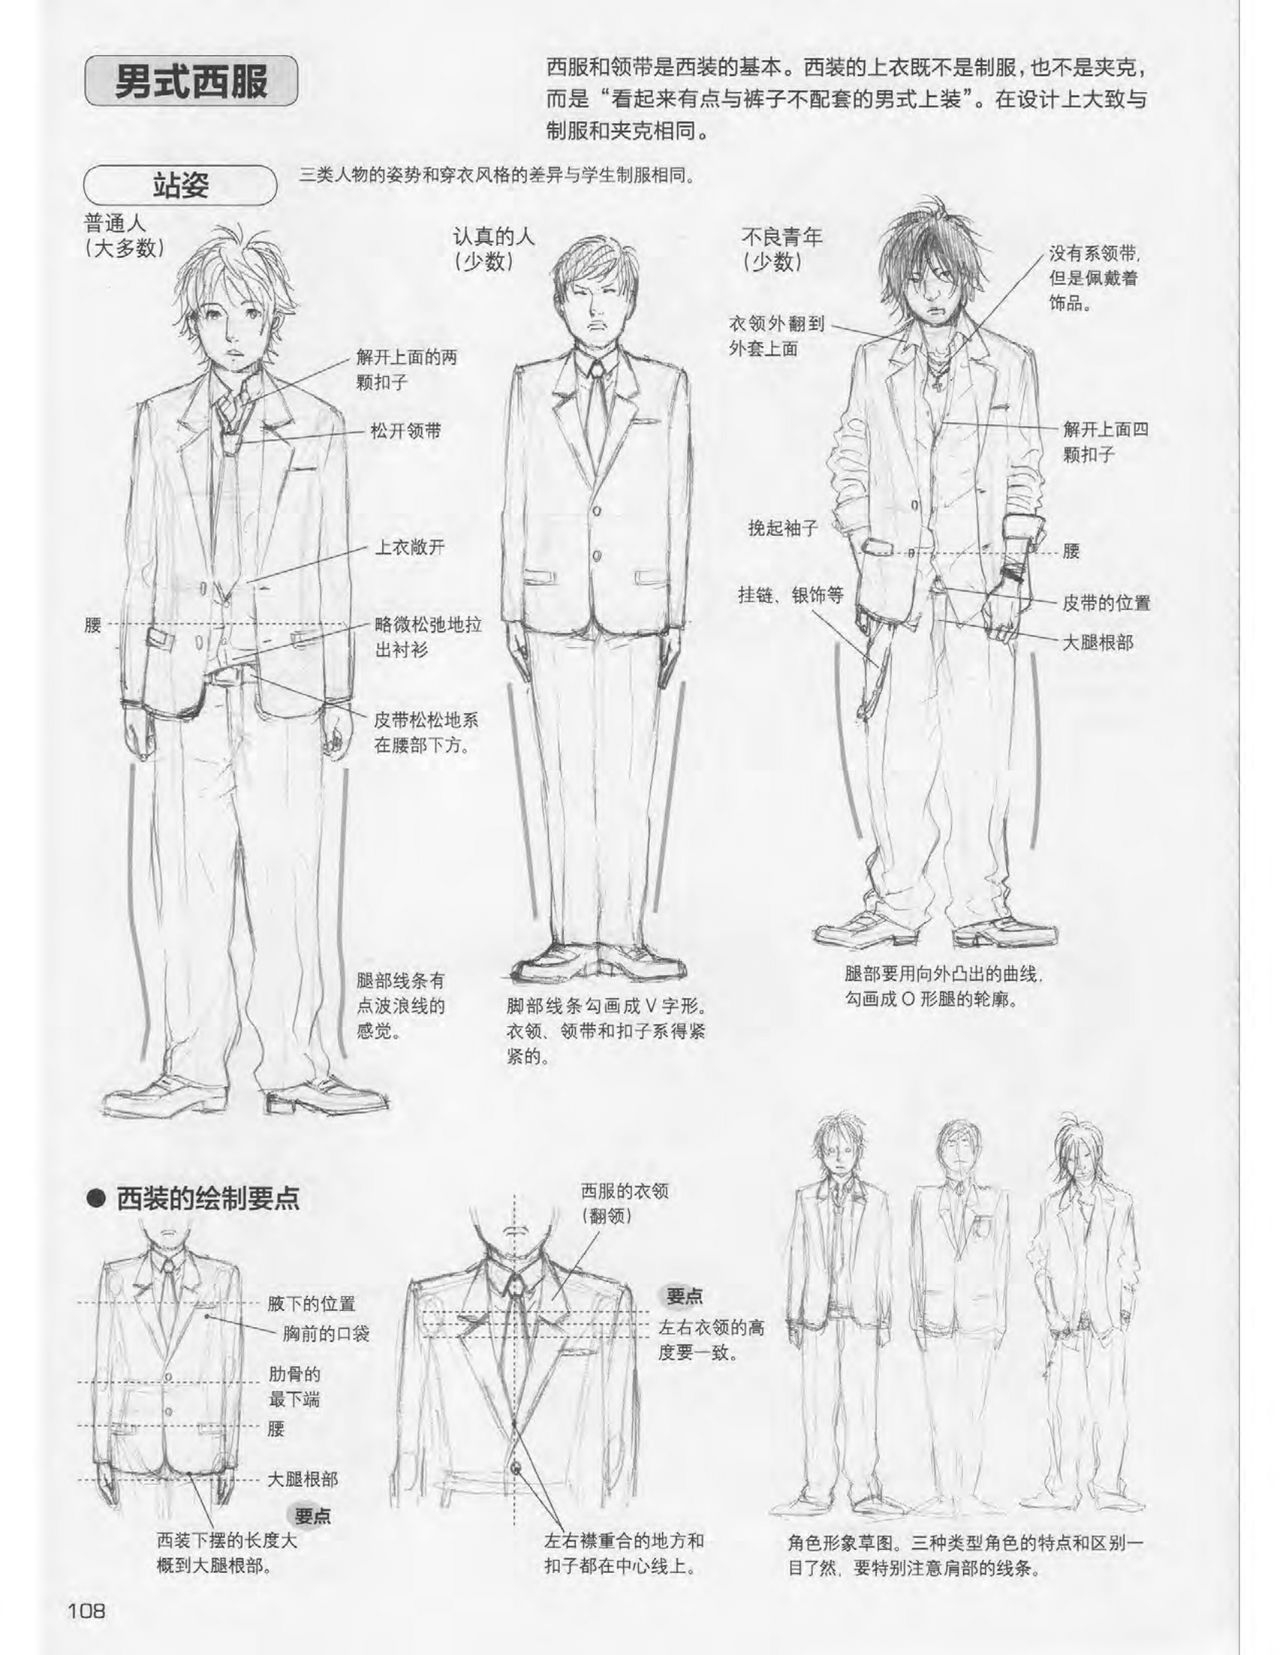 Japanese Manga Master Lecture 3: Lin Akira and Kakumaru Maru Talk About Glamorous Character Modeling 108